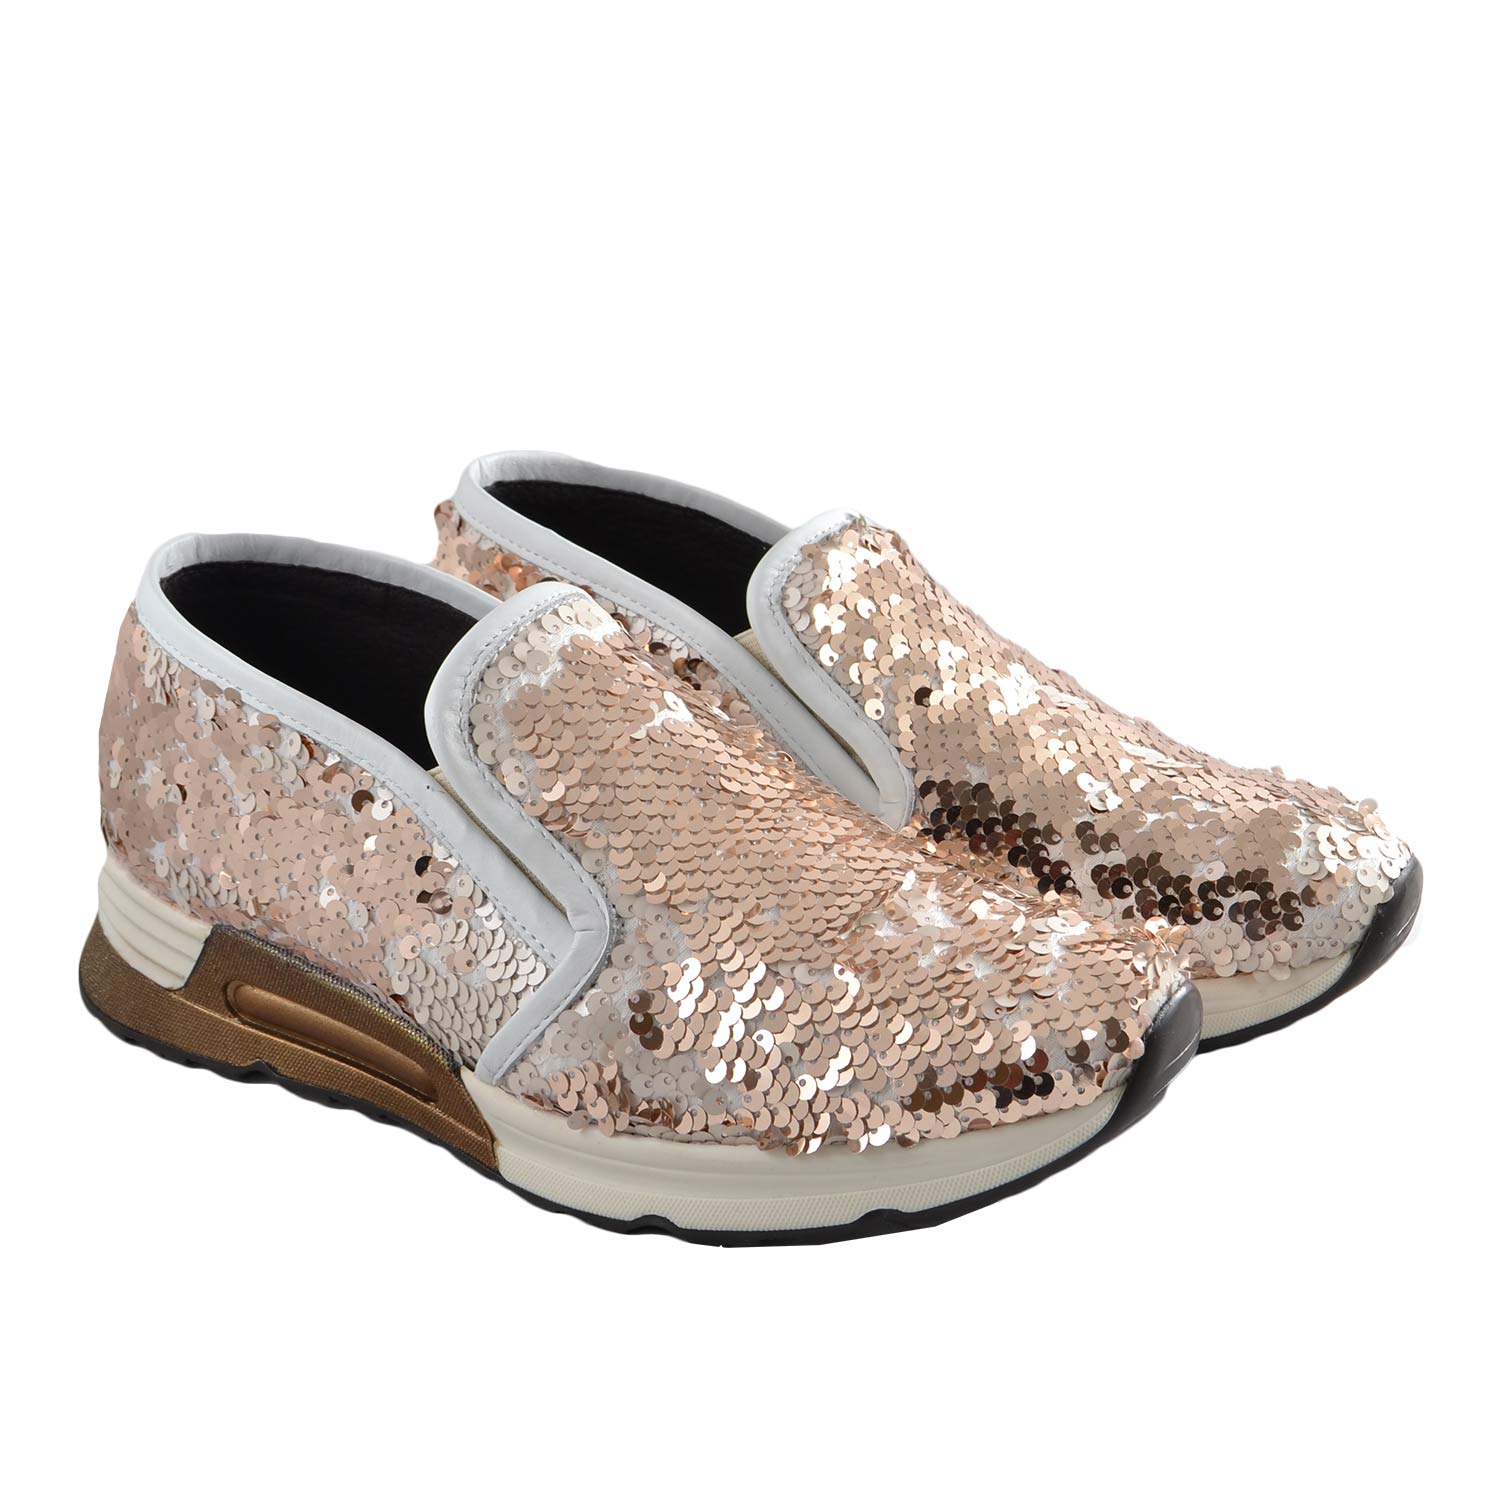 Sneaker slip on mocassino donna pailettes oro bianco in vera pelle made in Italy risvoltabili fondo running glamour.